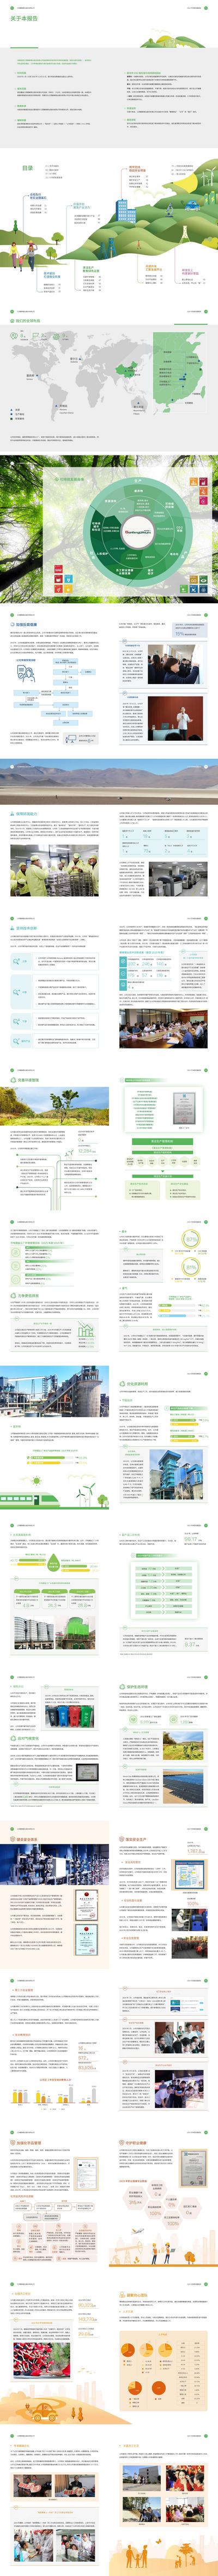 南门网 画册 宣传册 电力 企业 能源 目录 可持续发展 研发 科技 创新 技术 环保 优化 绿色 办公 证书 健康